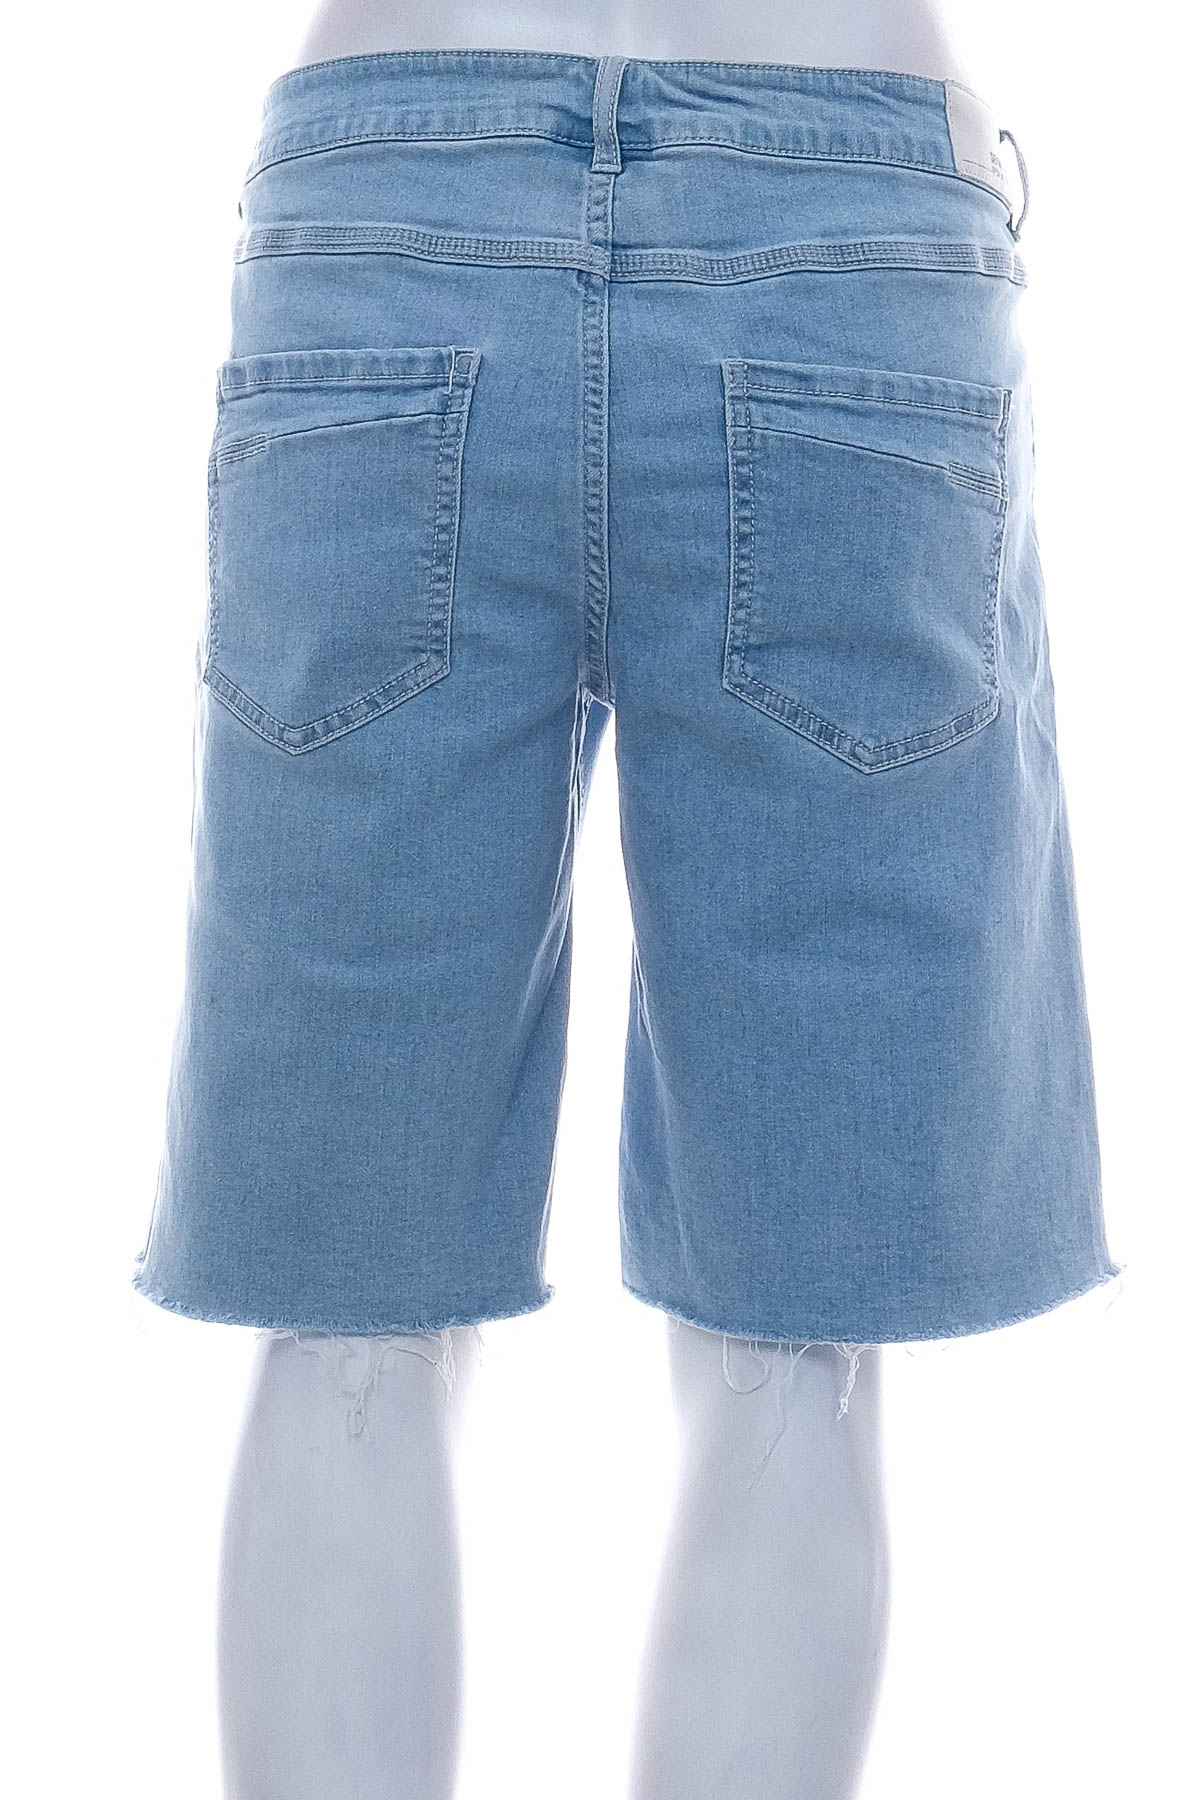 Krótkie spodnie damskie - Denim 1982 - 1